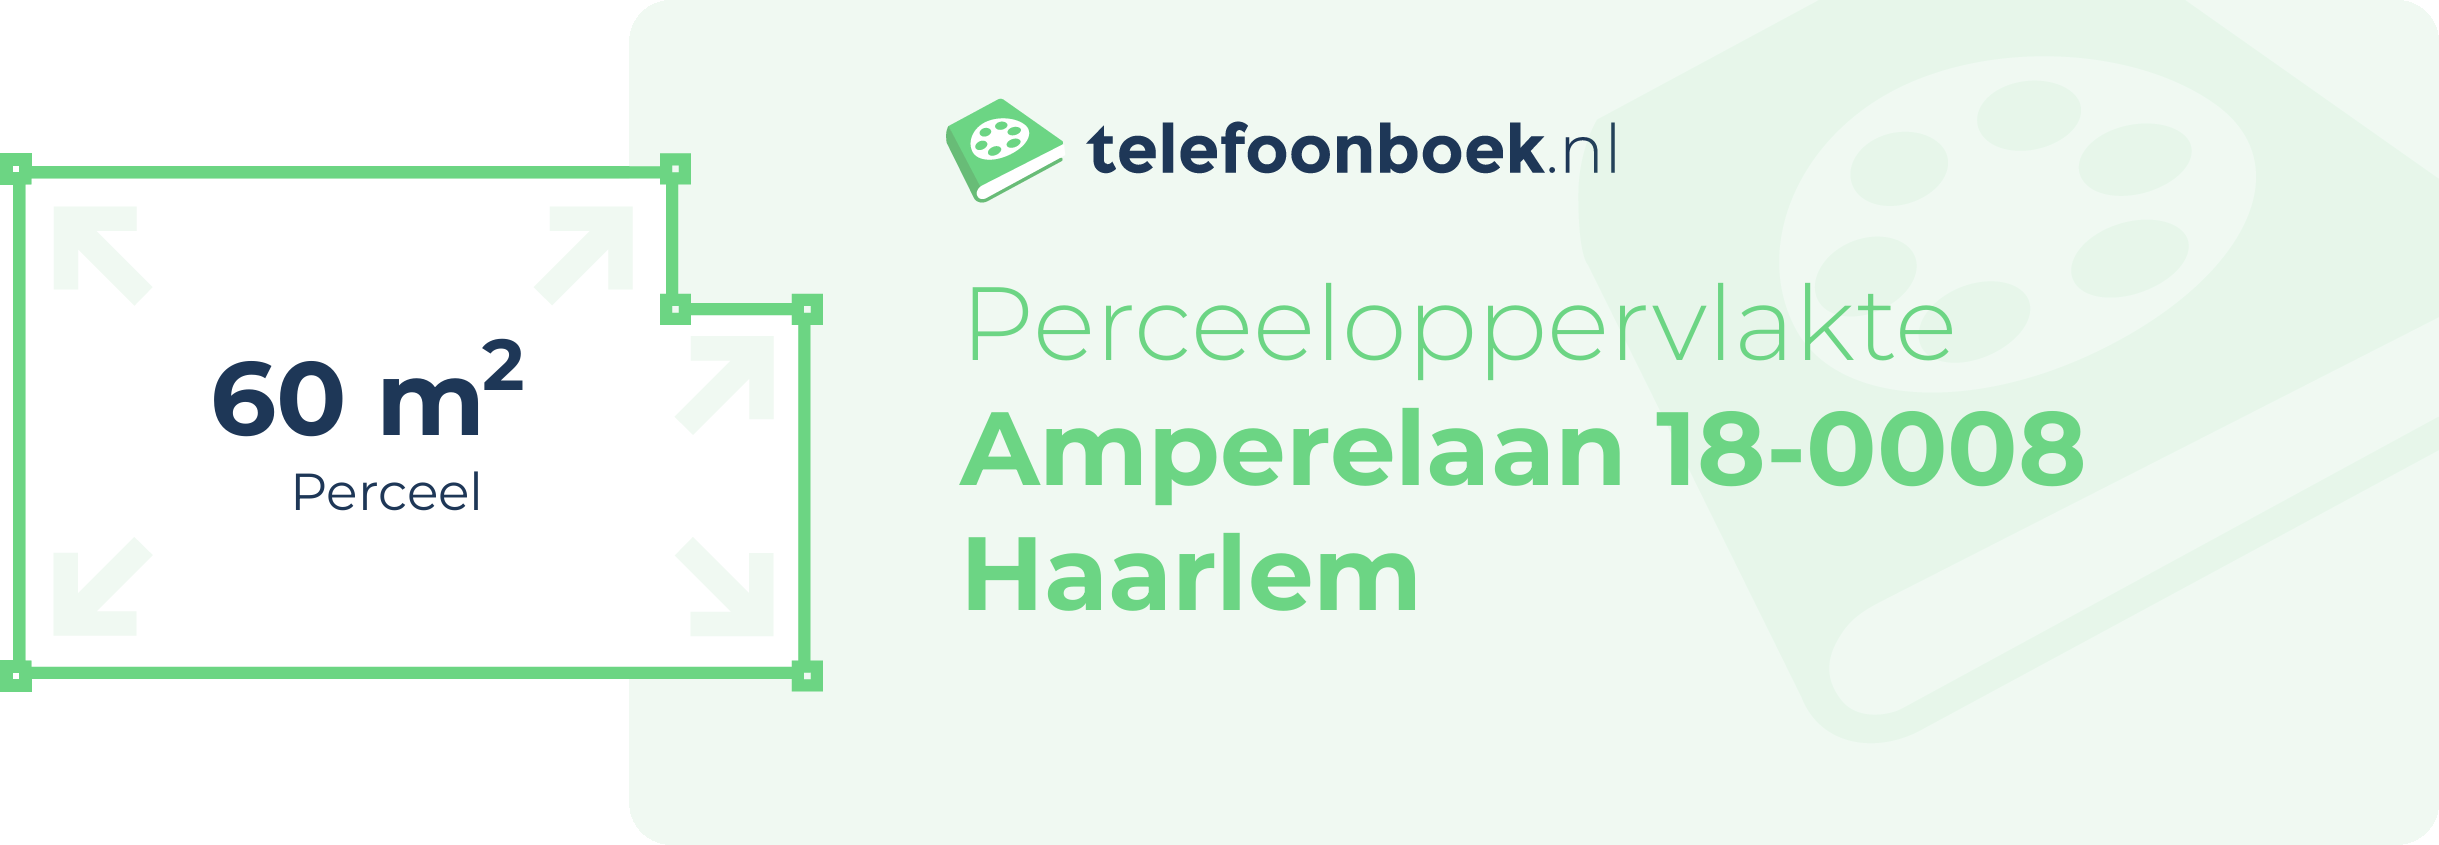 Perceeloppervlakte Amperelaan 18-0008 Haarlem